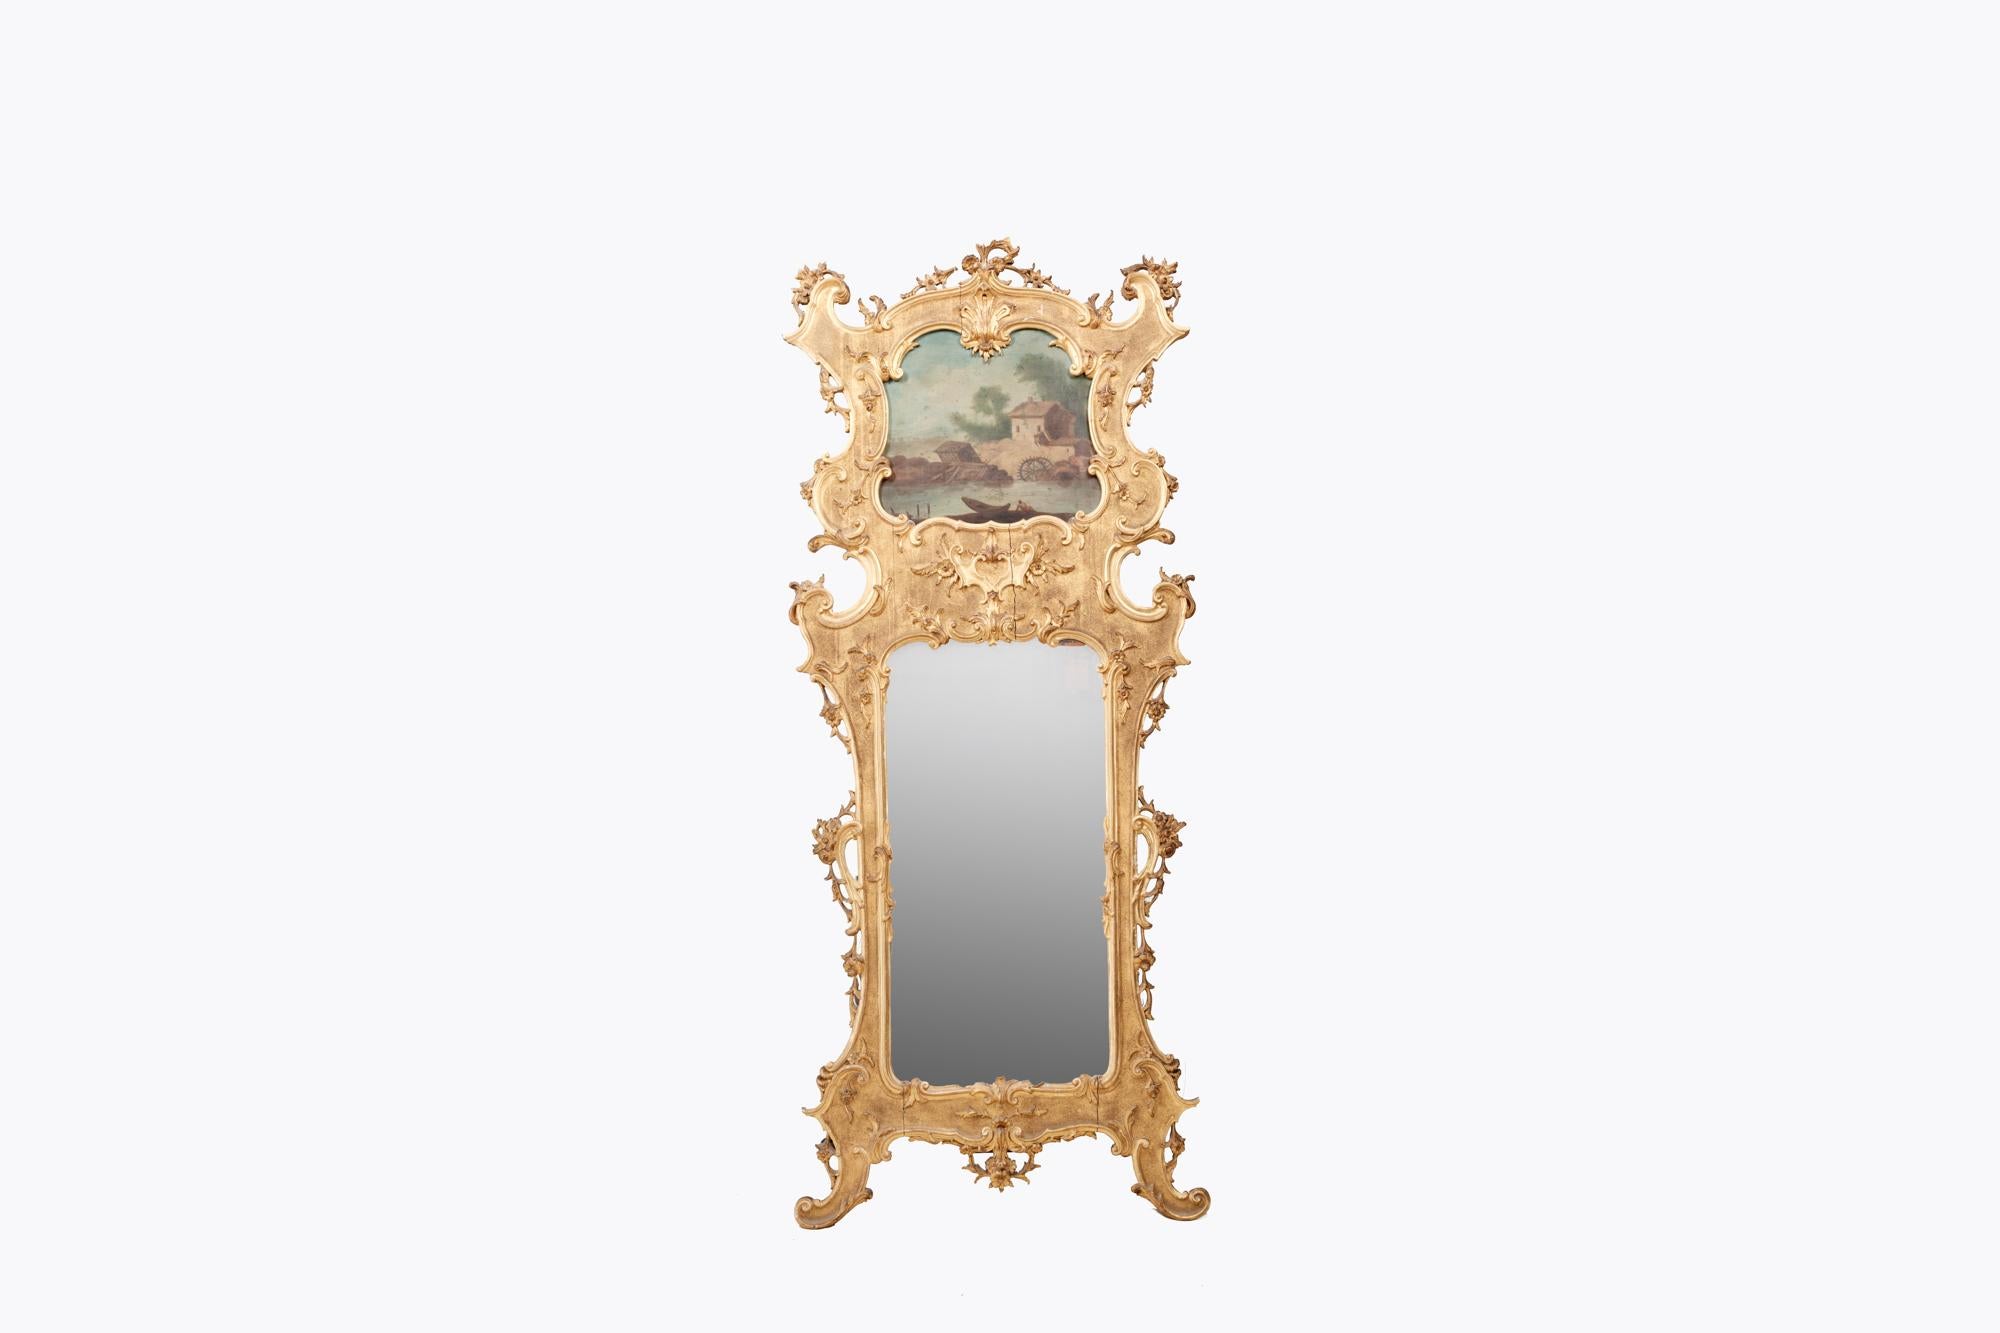 Paire de miroirs trumeau en bois doré du 19ème siècle avec des plaques à compartiments d'époque dans des cadres en bois doré ornés. Les cadres sont minutieusement sculptés de rinceaux A.I.C., de rubans, de têtes de fleurs et de feuilles d'acanthe.